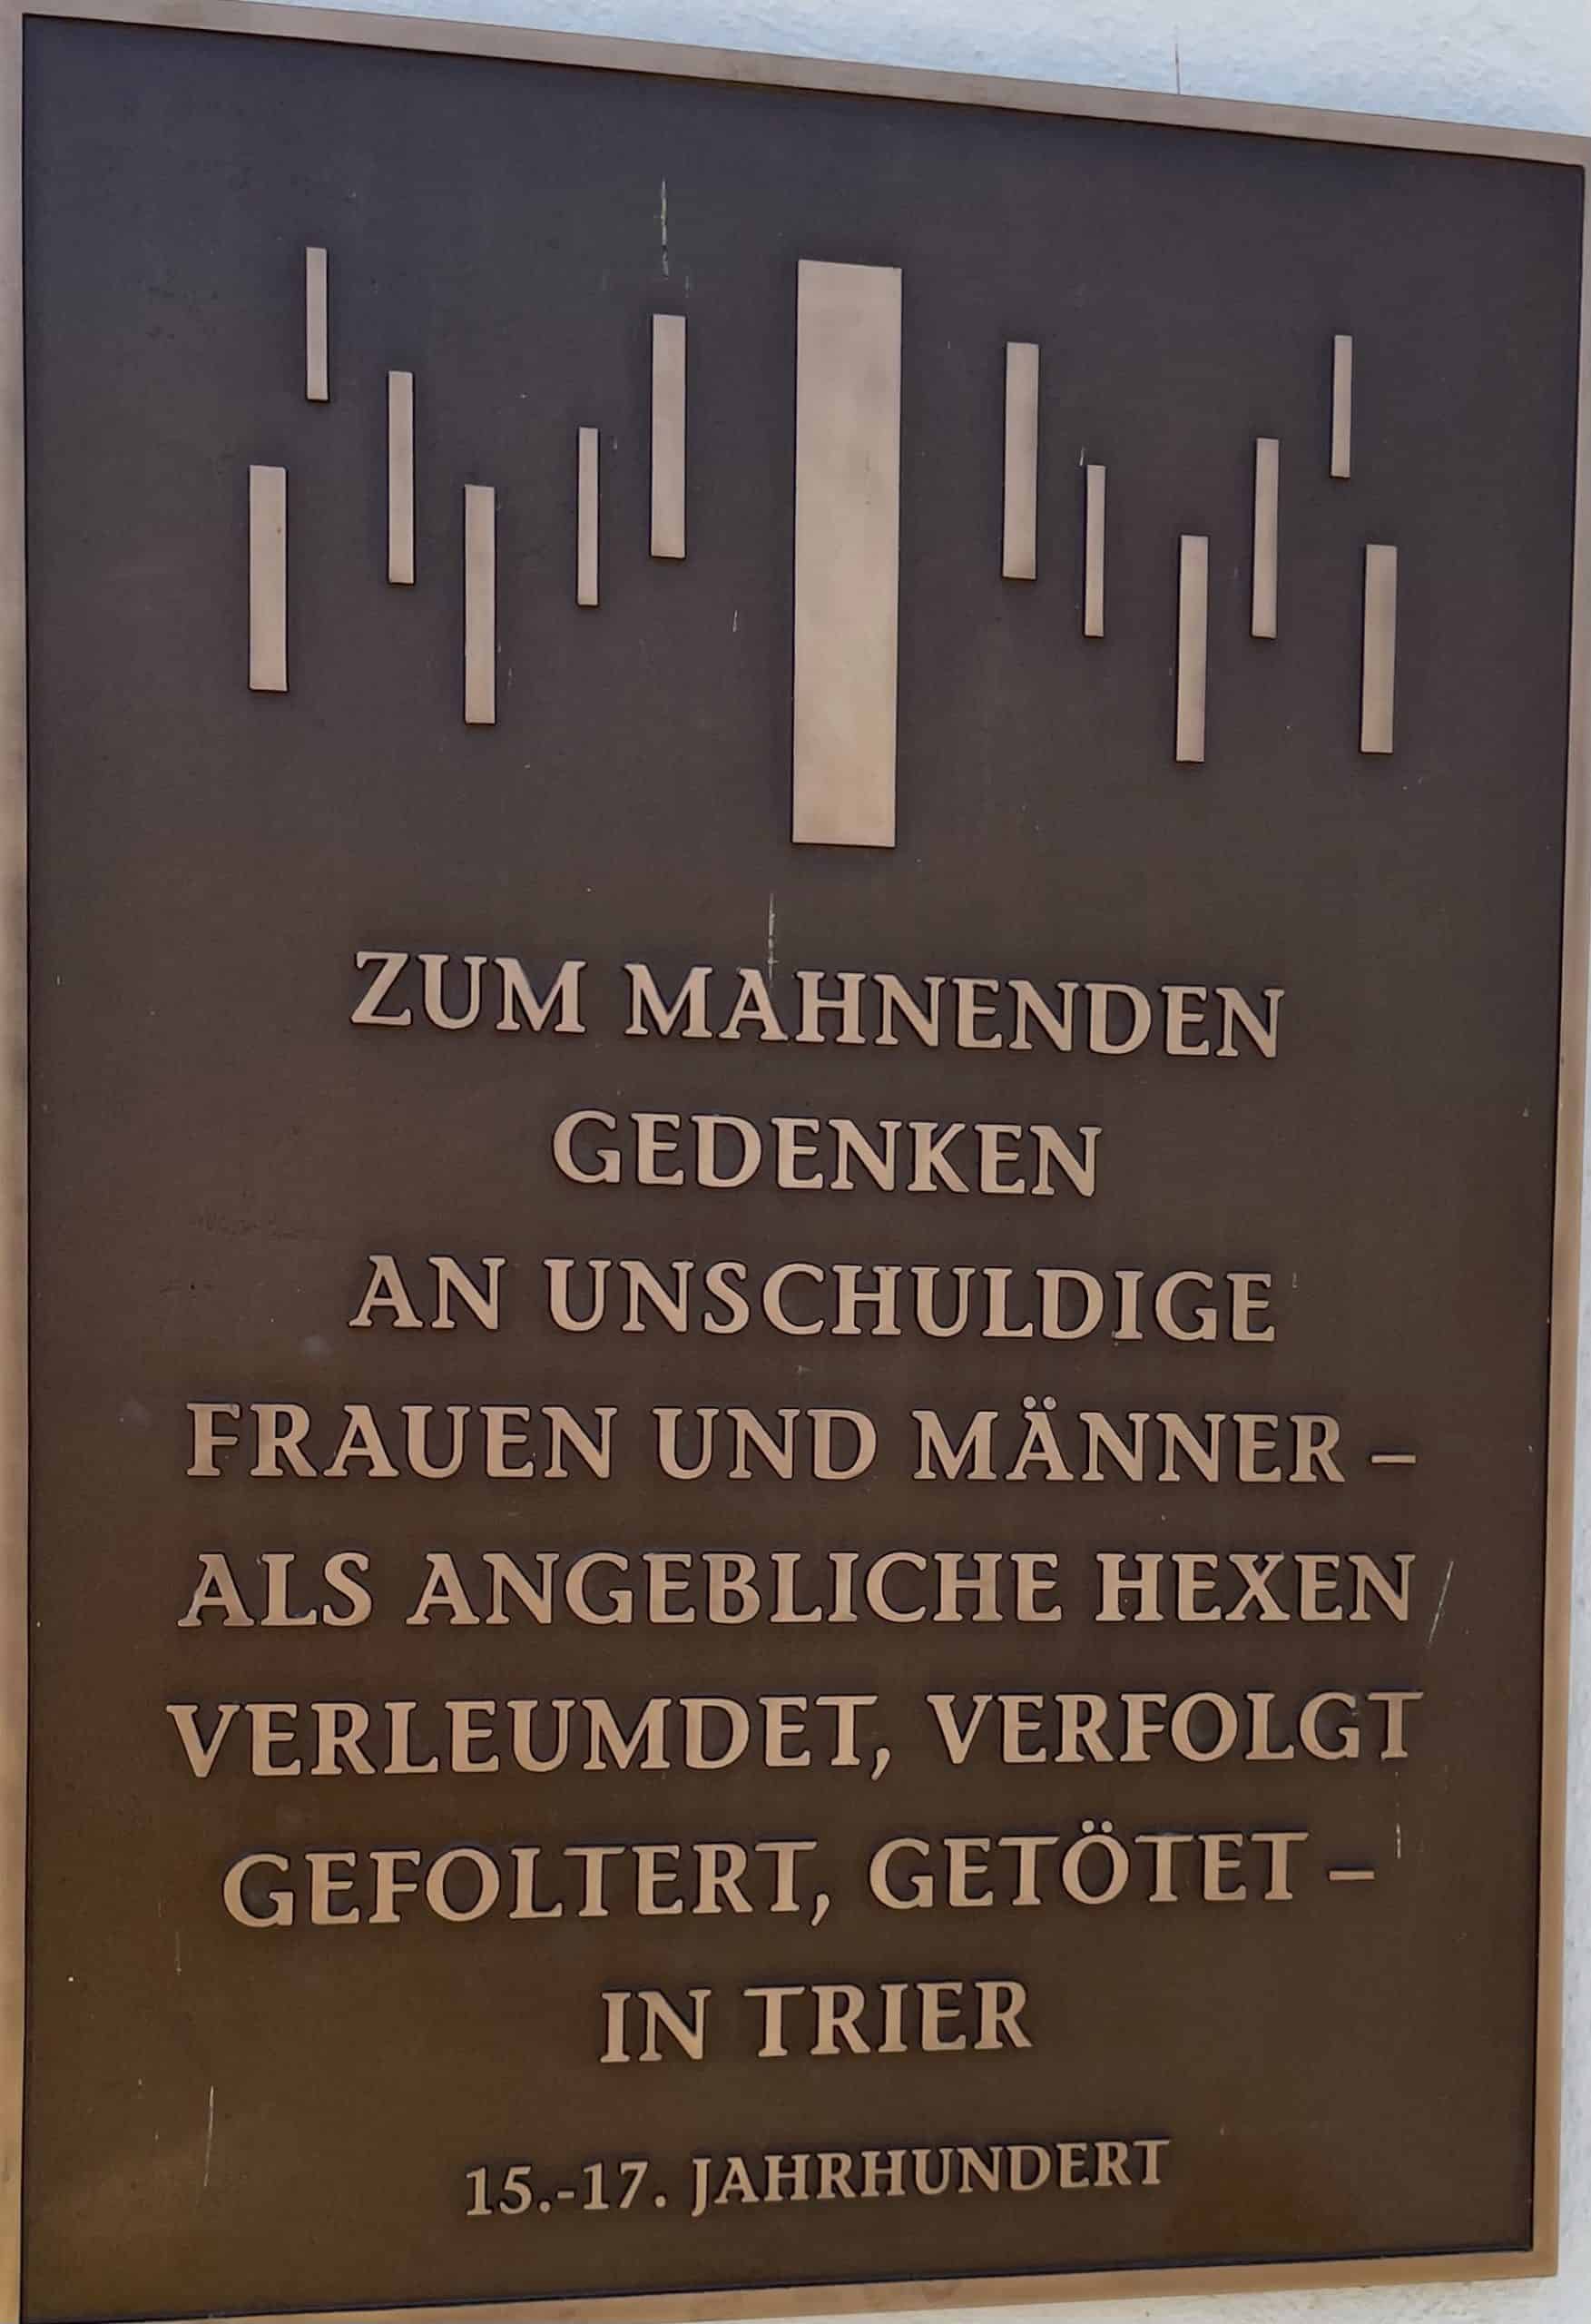 Gedenktafel in Trier an die Frauen und Männer, die im Mittelalter als Hexe getötrt wurden